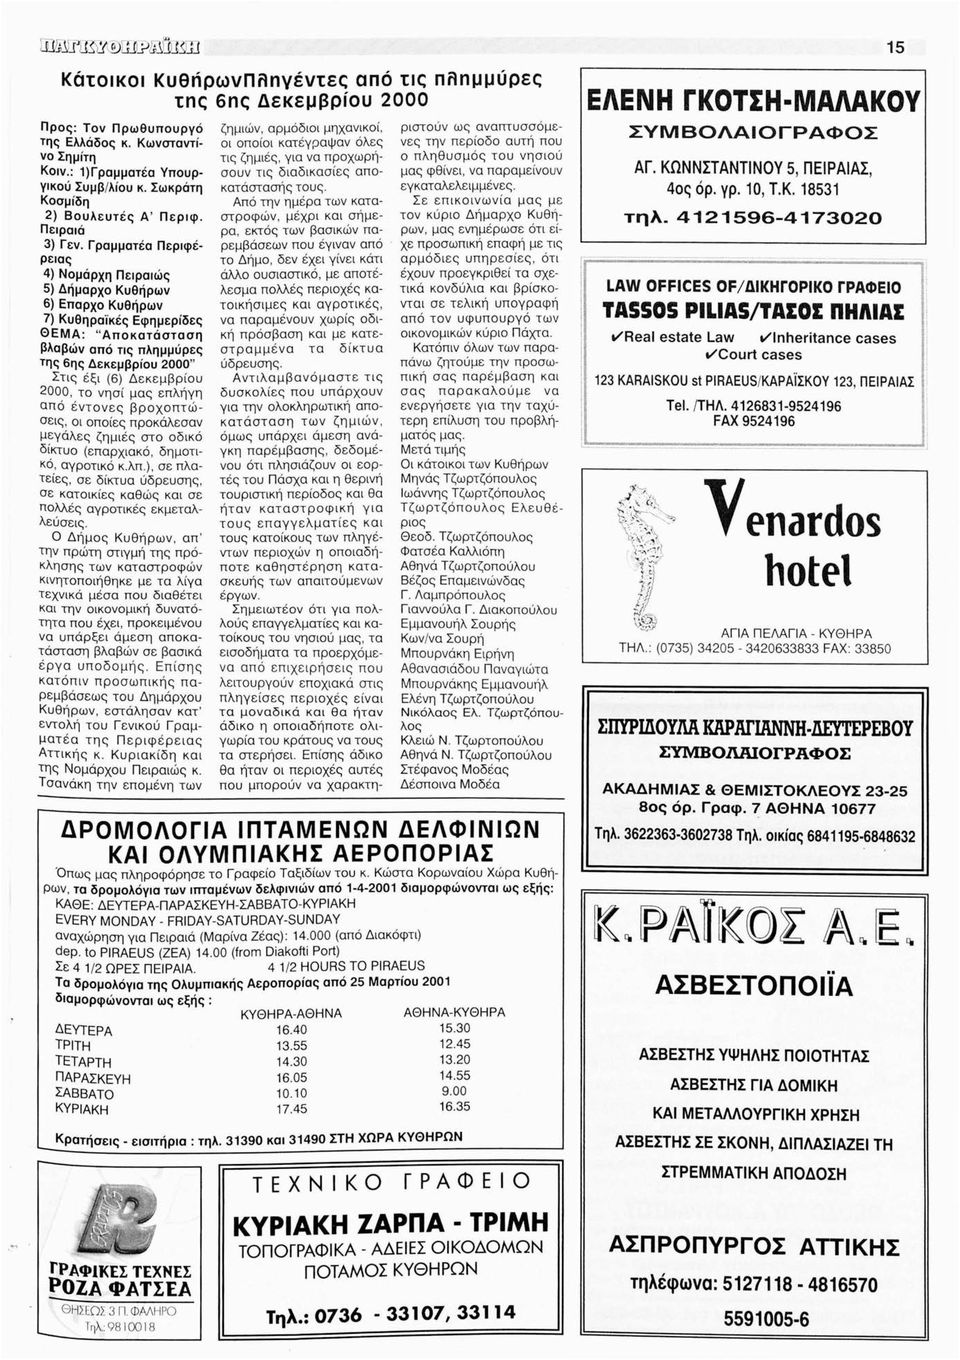 Γραμματέα Περιφέρειας 4) Νομάρχη Πειραιώς 5) Δήμαρχο Κυθήρων 6) Επαρχο Κυθήρων 7) Κυθηραϊκές Εφημερίδες ΘΕΜΑ: "Αποκατάσταση βλαβών από τις πλημμύρες της 6ης Δεκεμβρίου 2000" Στις έξι (6) Δεκεμβρίου